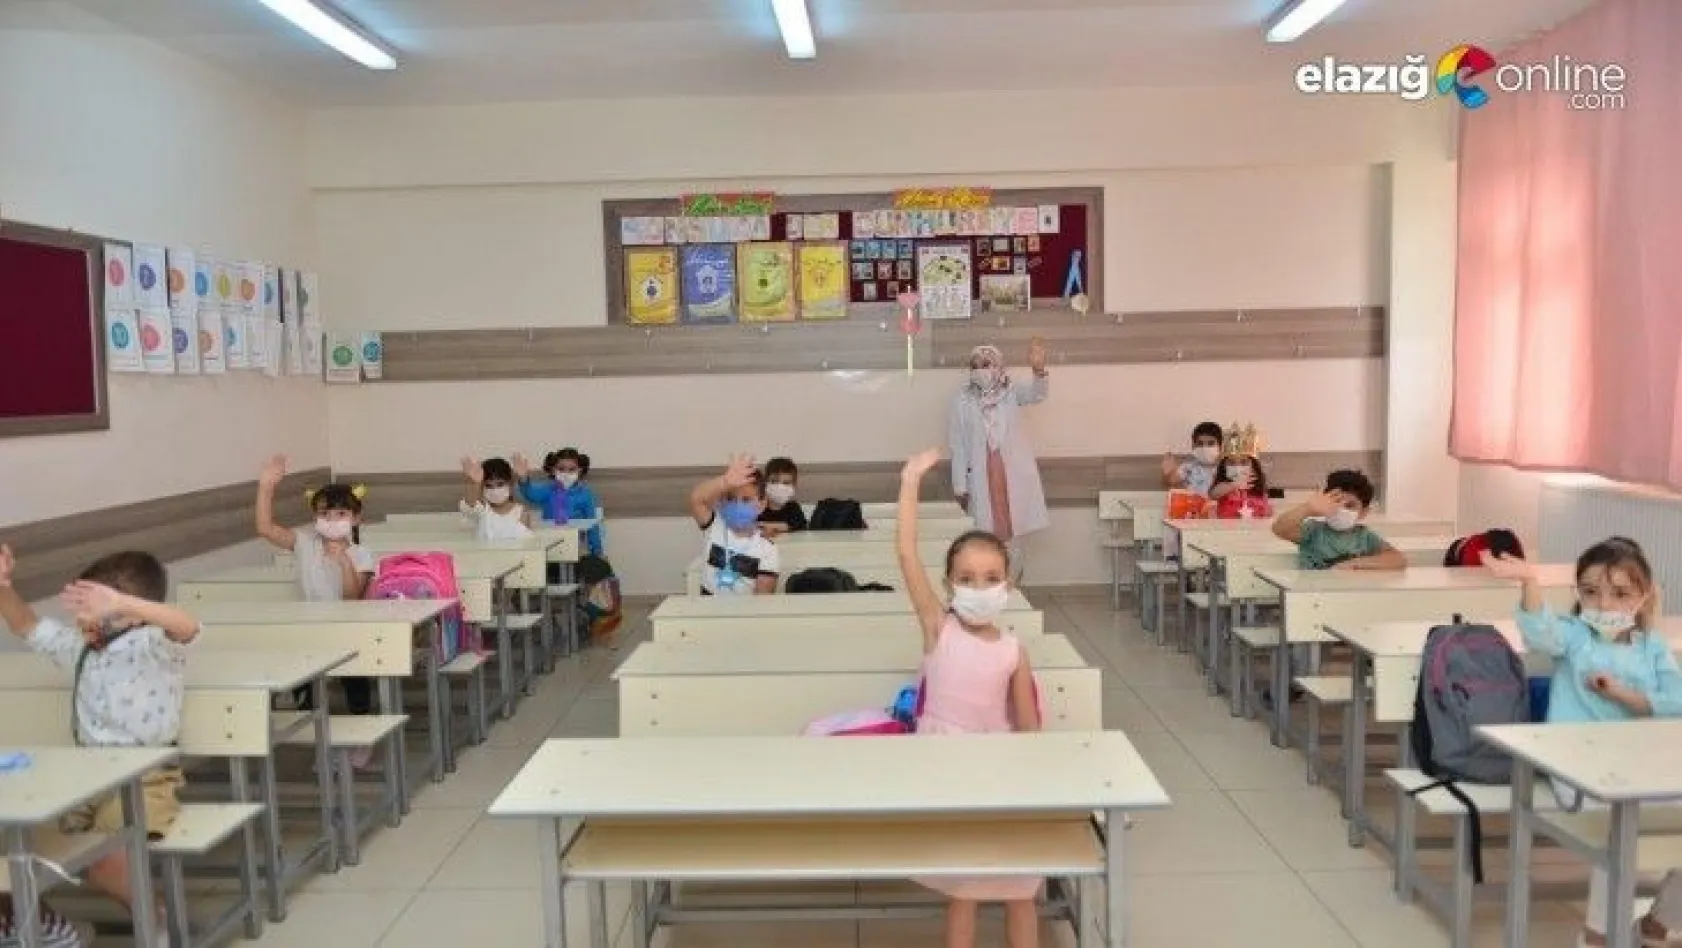 Elazığ'da minikler okula 'Merhaba' dedi